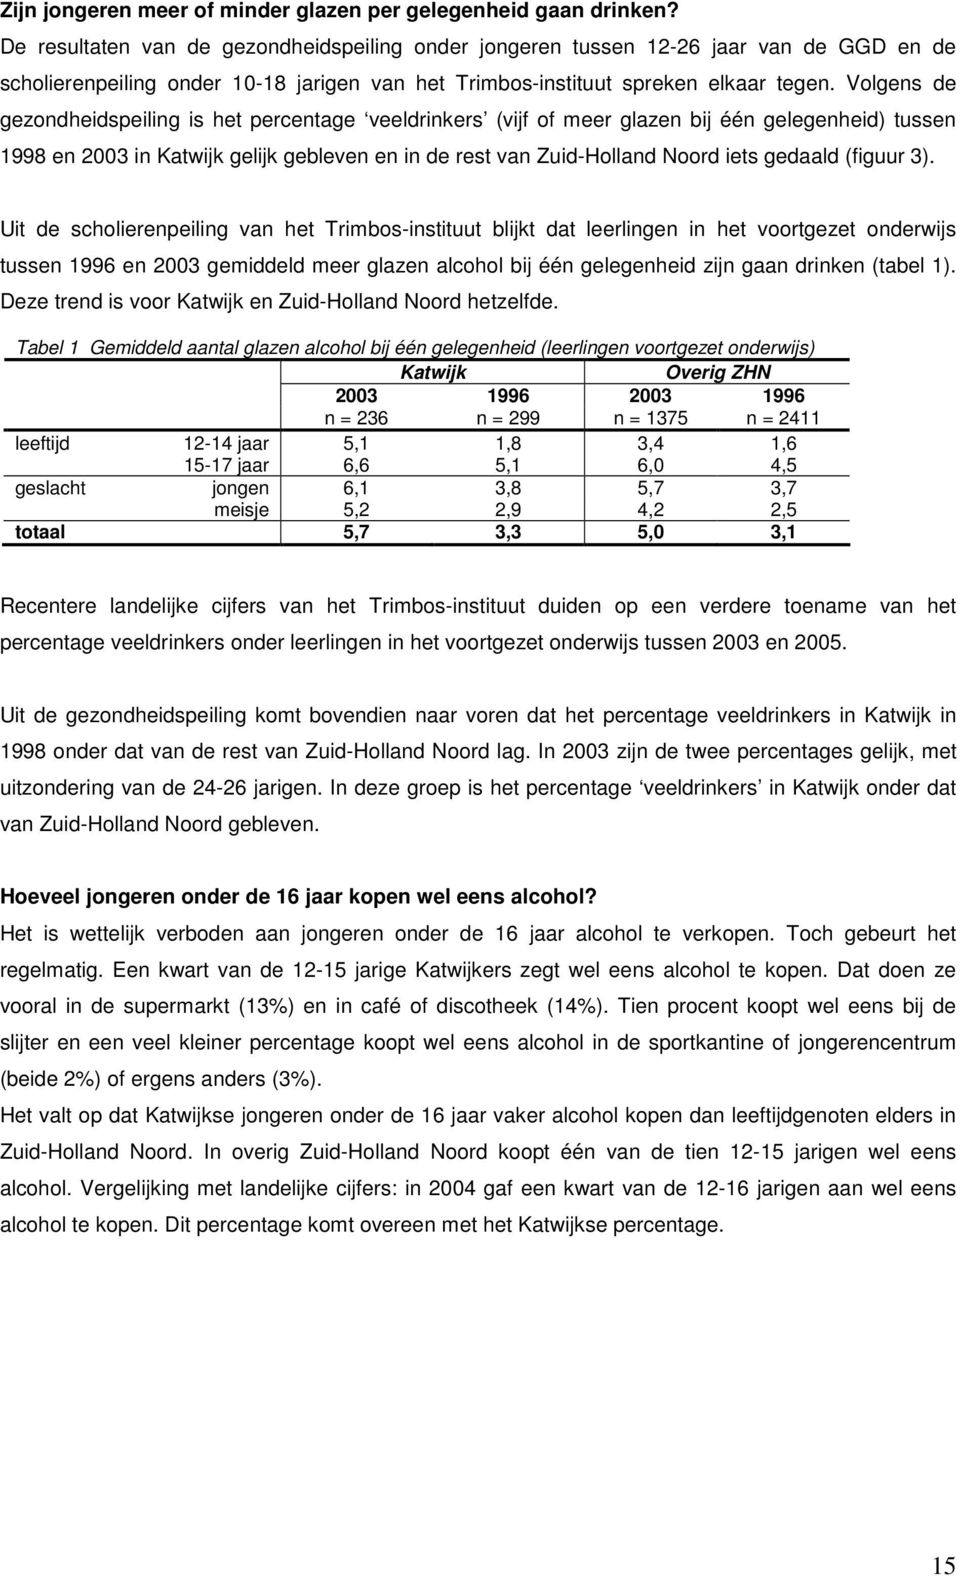 Volgens de gezondheidspeiling is het percentage veeldrinkers (vijf of meer glazen bij één gelegenheid) tussen 1998 en 2003 in Katwijk gelijk gebleven en in de rest van Zuid-Holland Noord iets gedaald